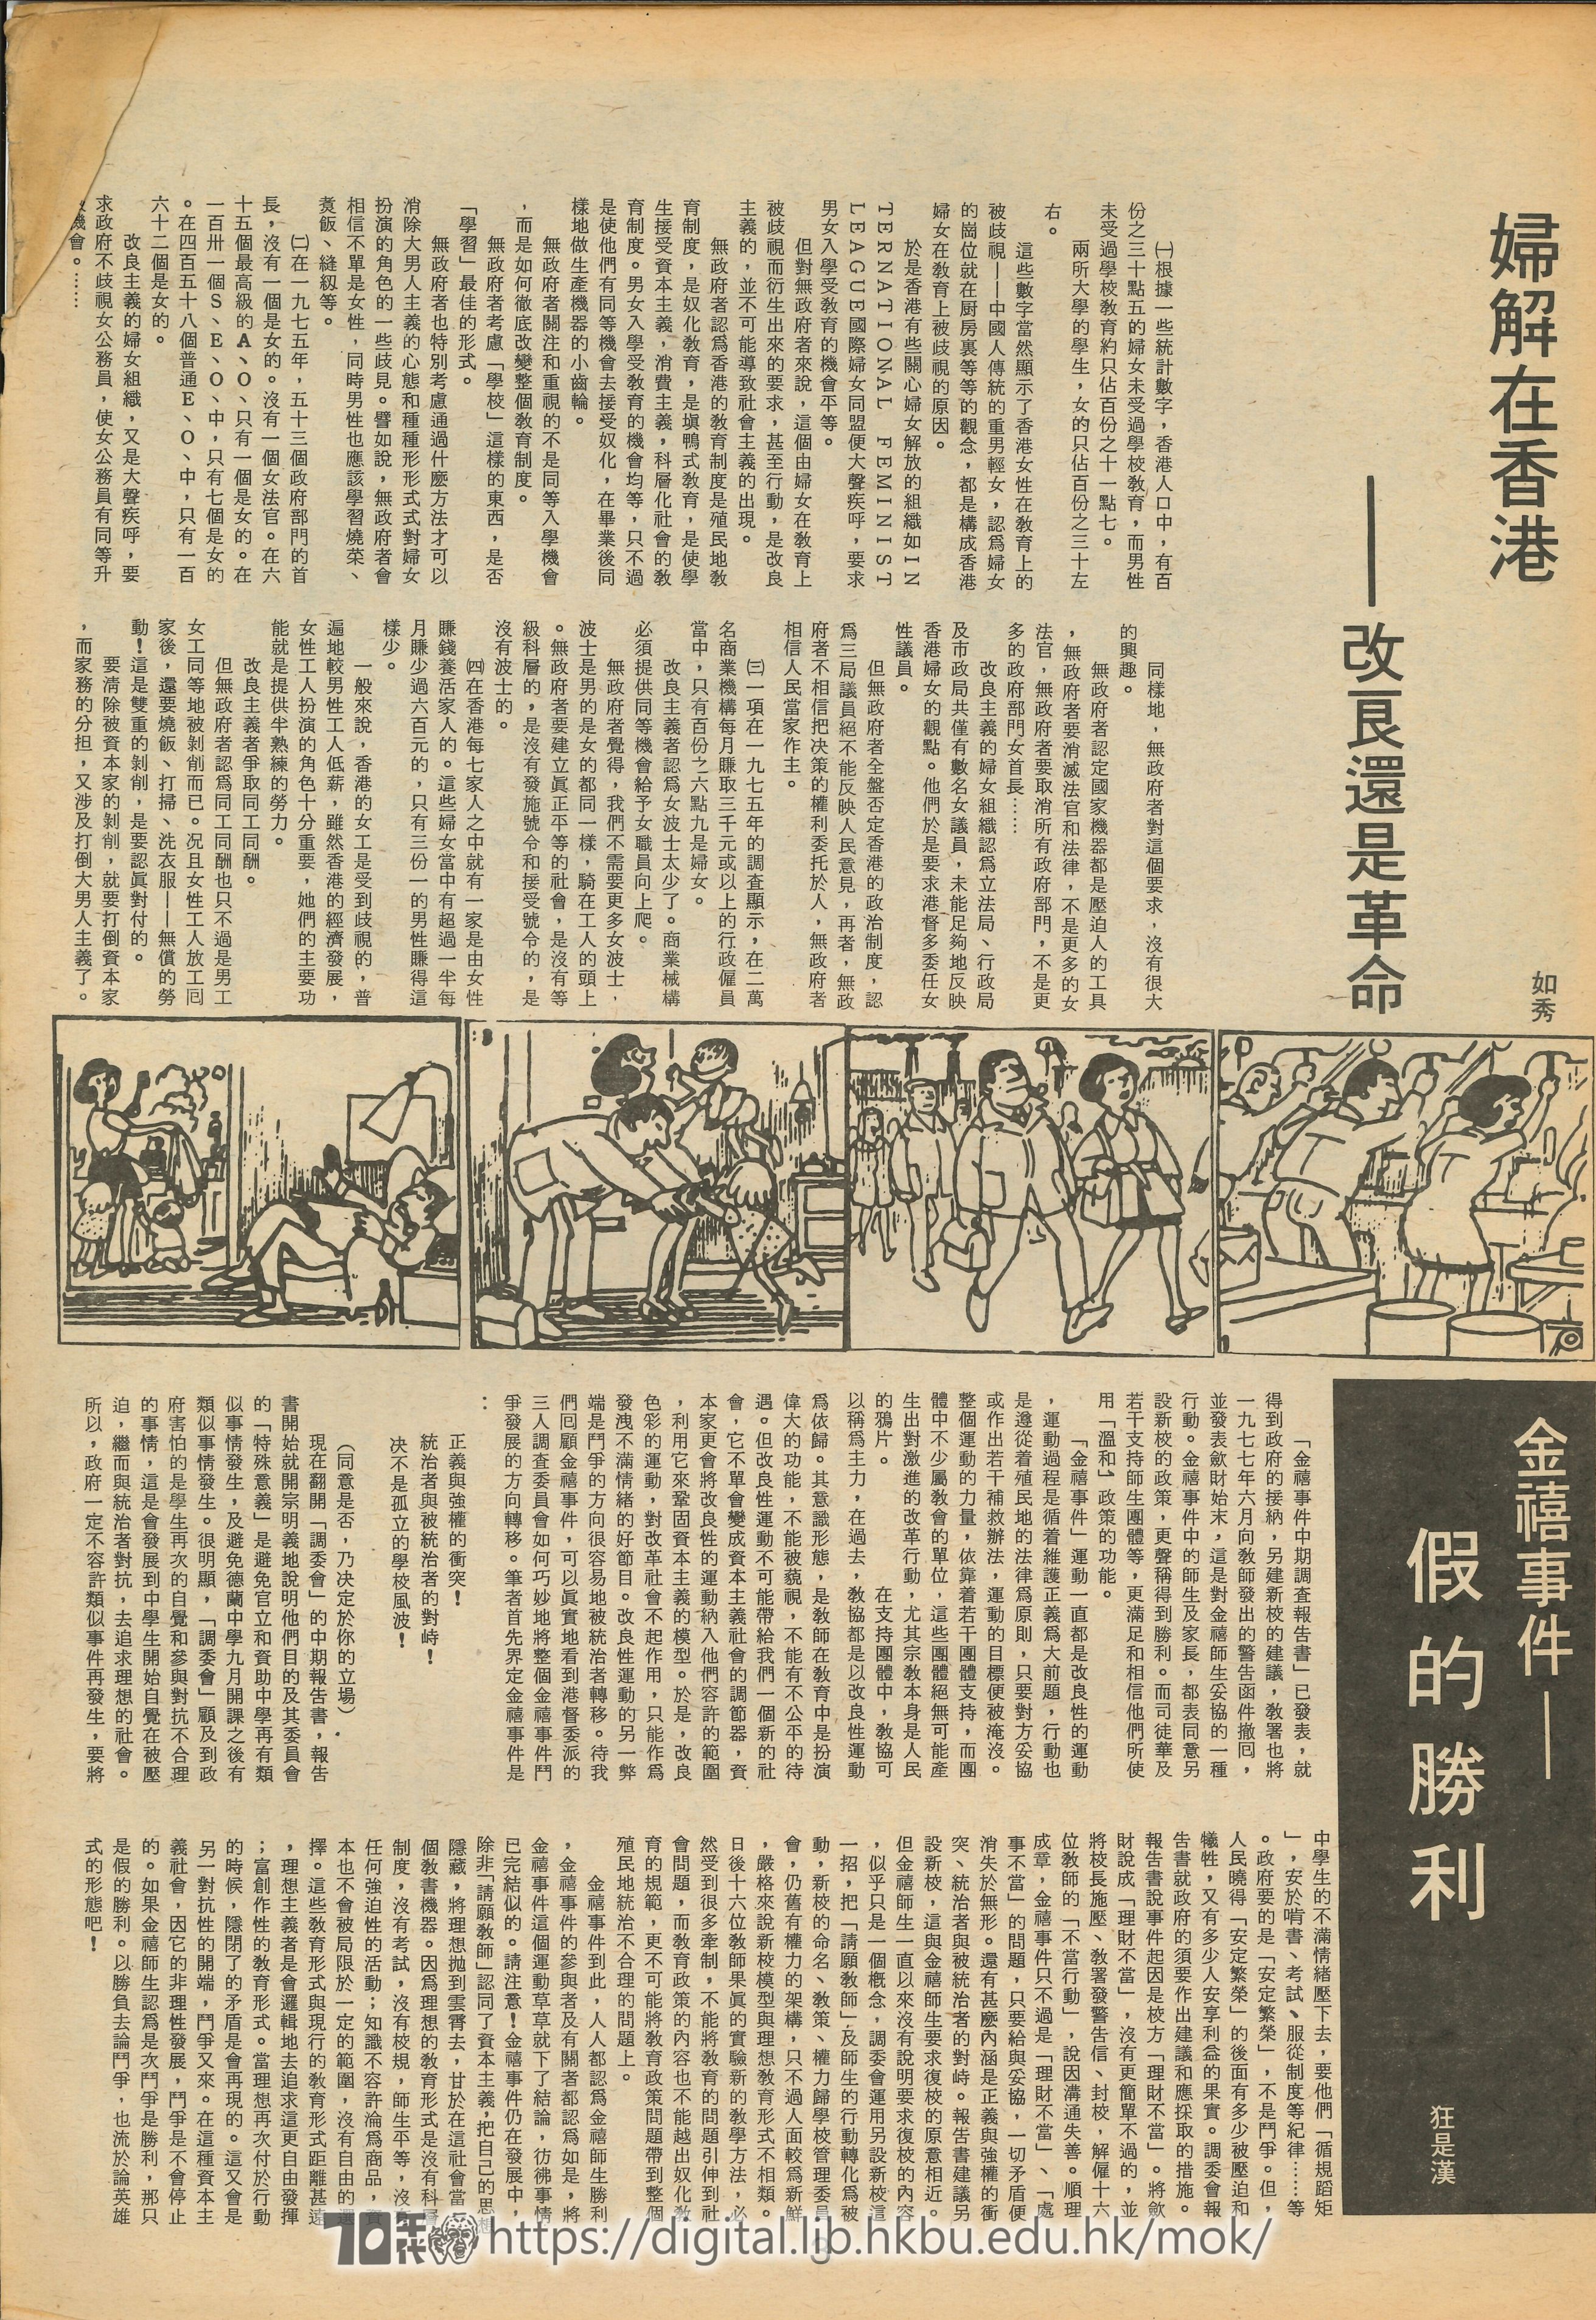  復刊（2） Women liberation movement in Hong Kong - reform or revolution 如秀 